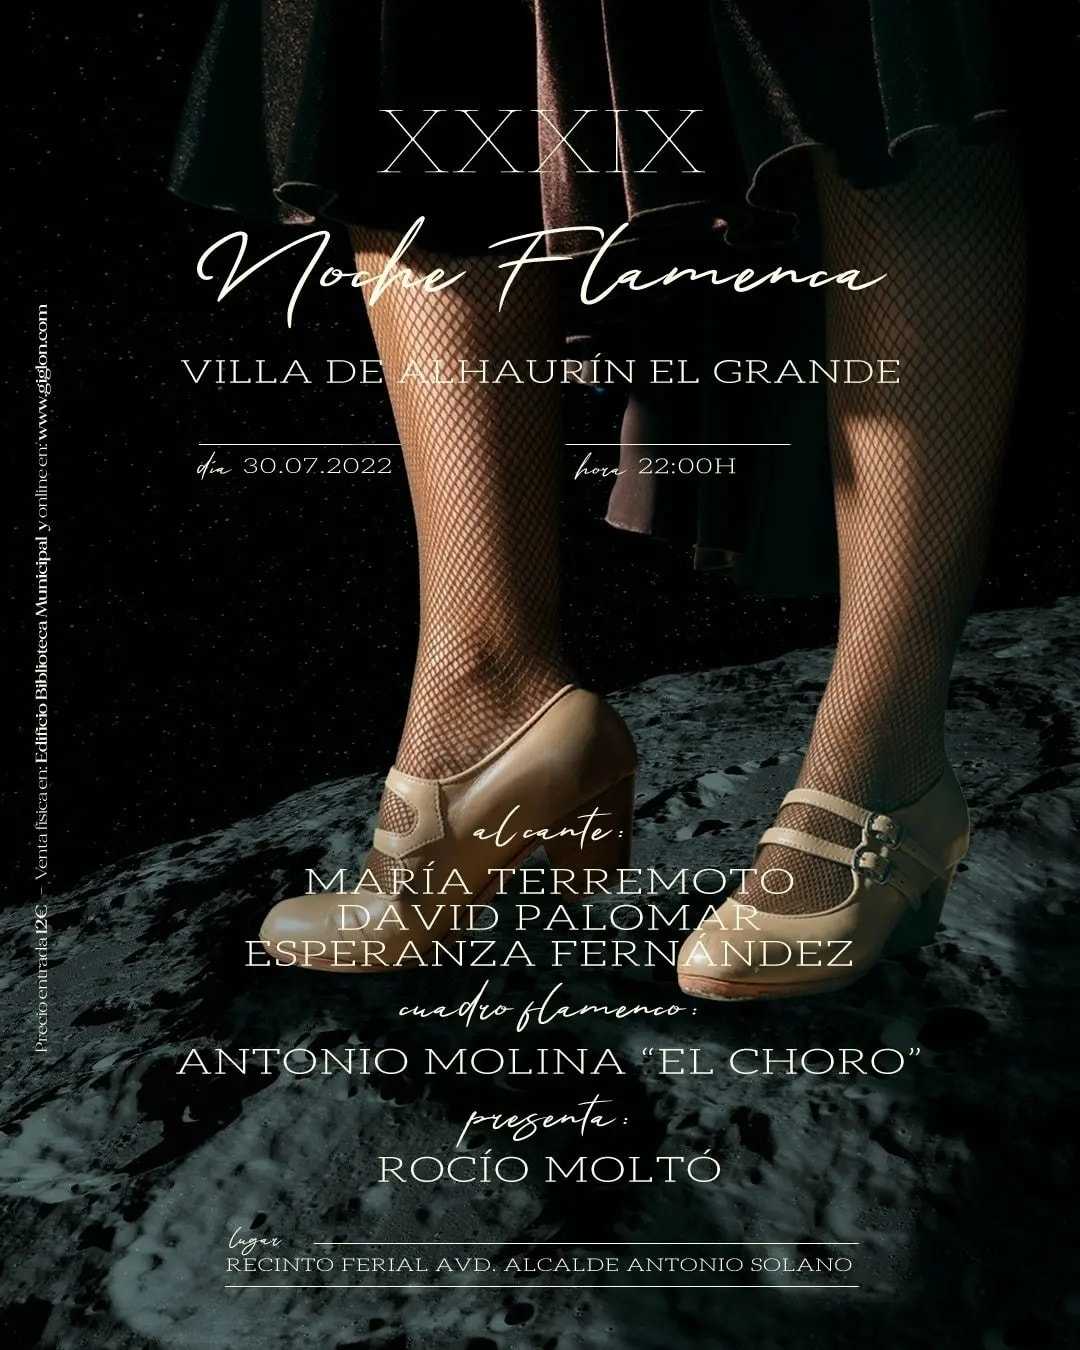 XXXIX Noche Flamenca Villa de Alhaurín el Grande